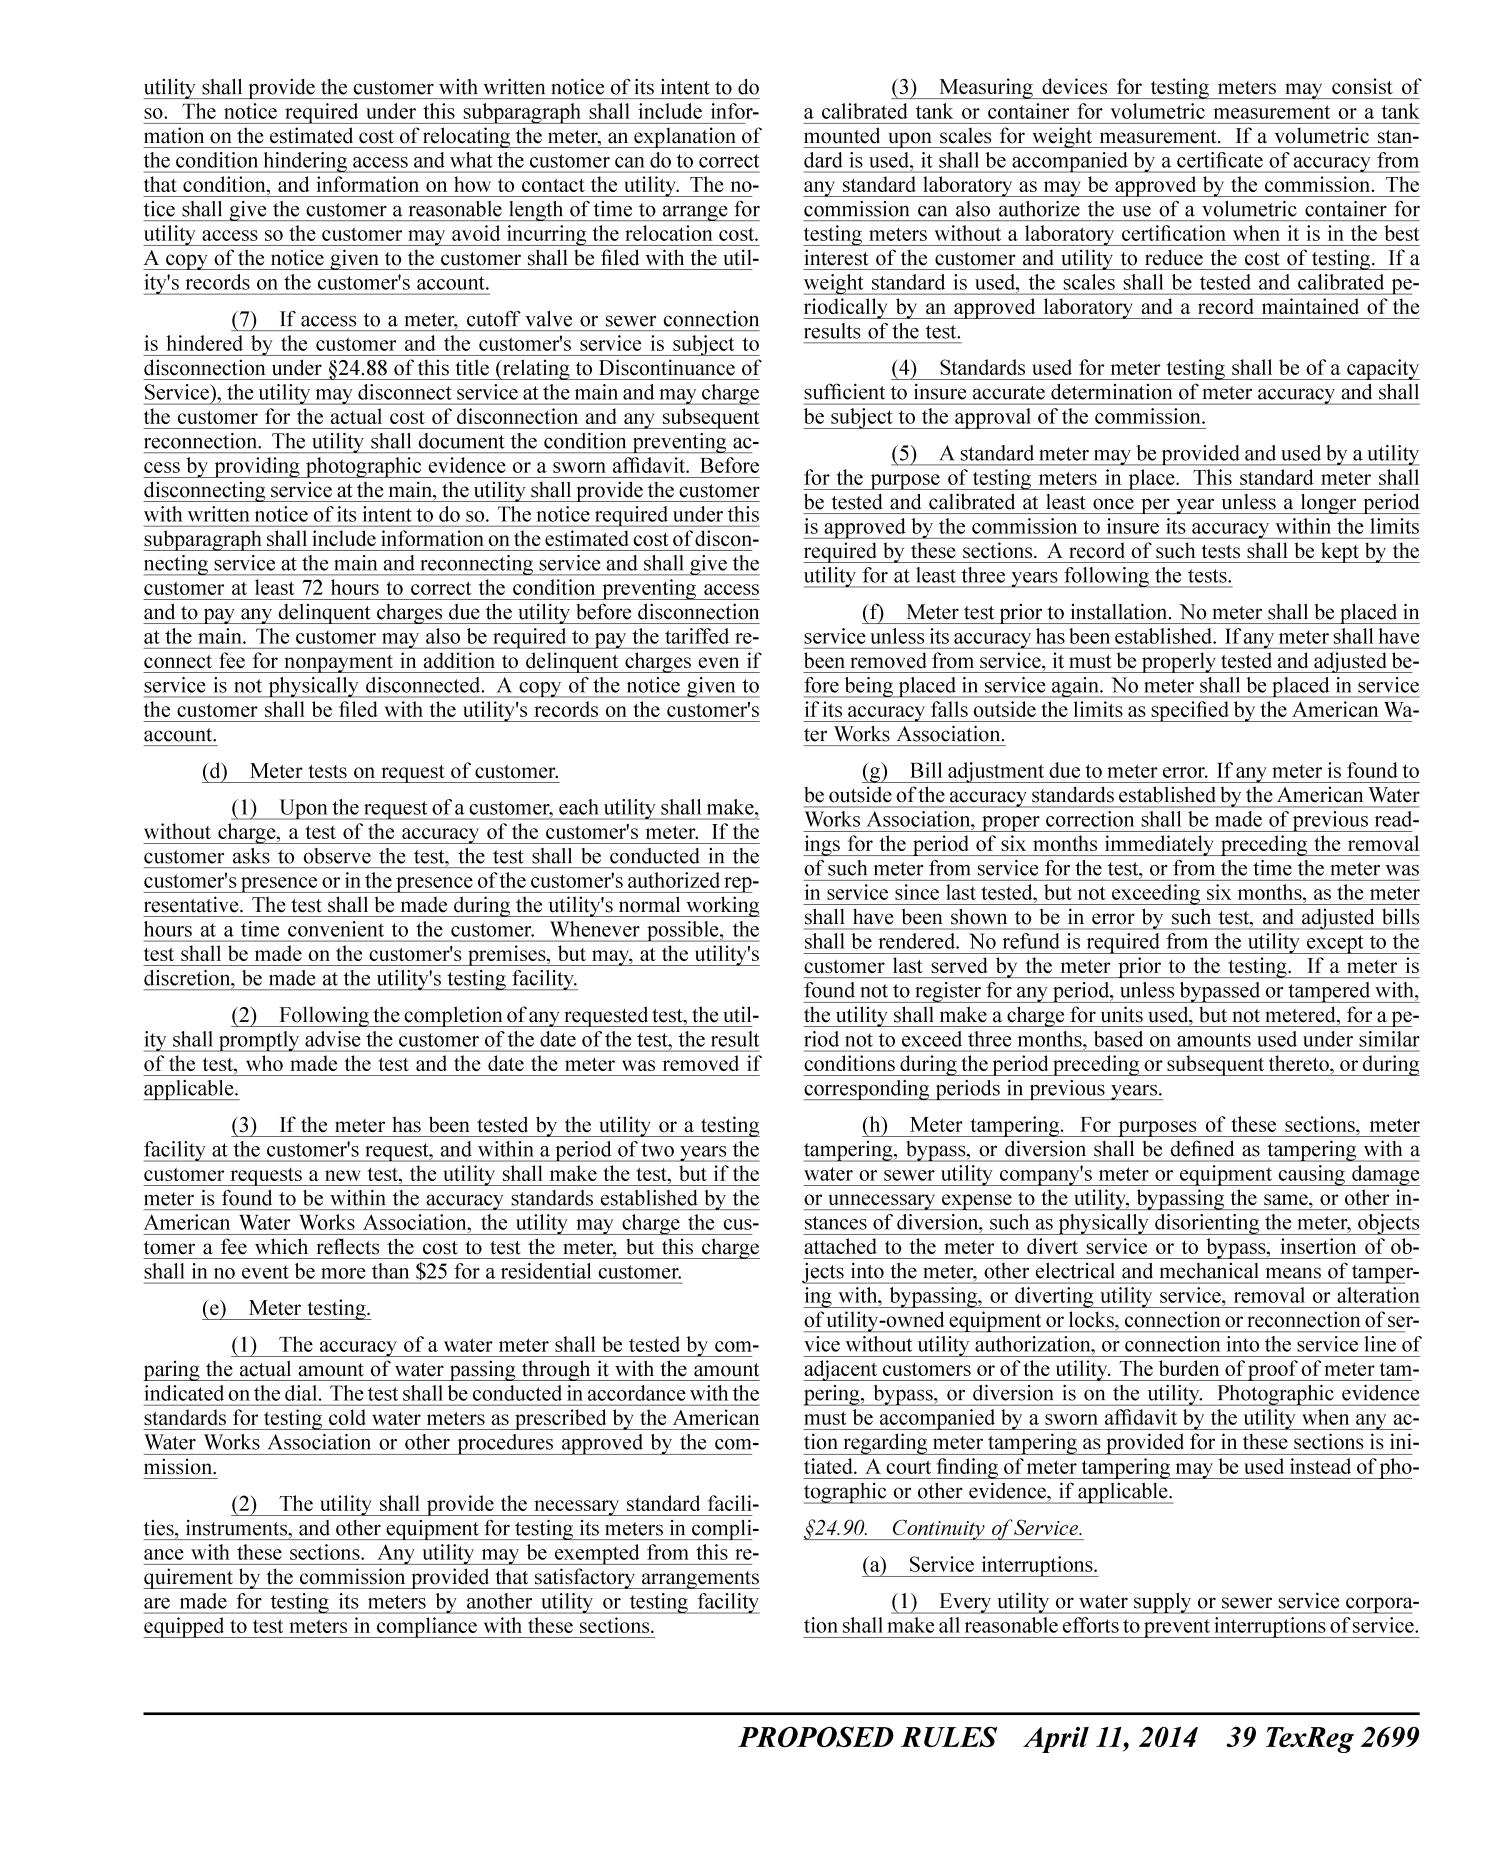 Texas Register, Volume 39, Number 15, Pages 2629-3006, April 11, 2014
                                                
                                                    2699
                                                